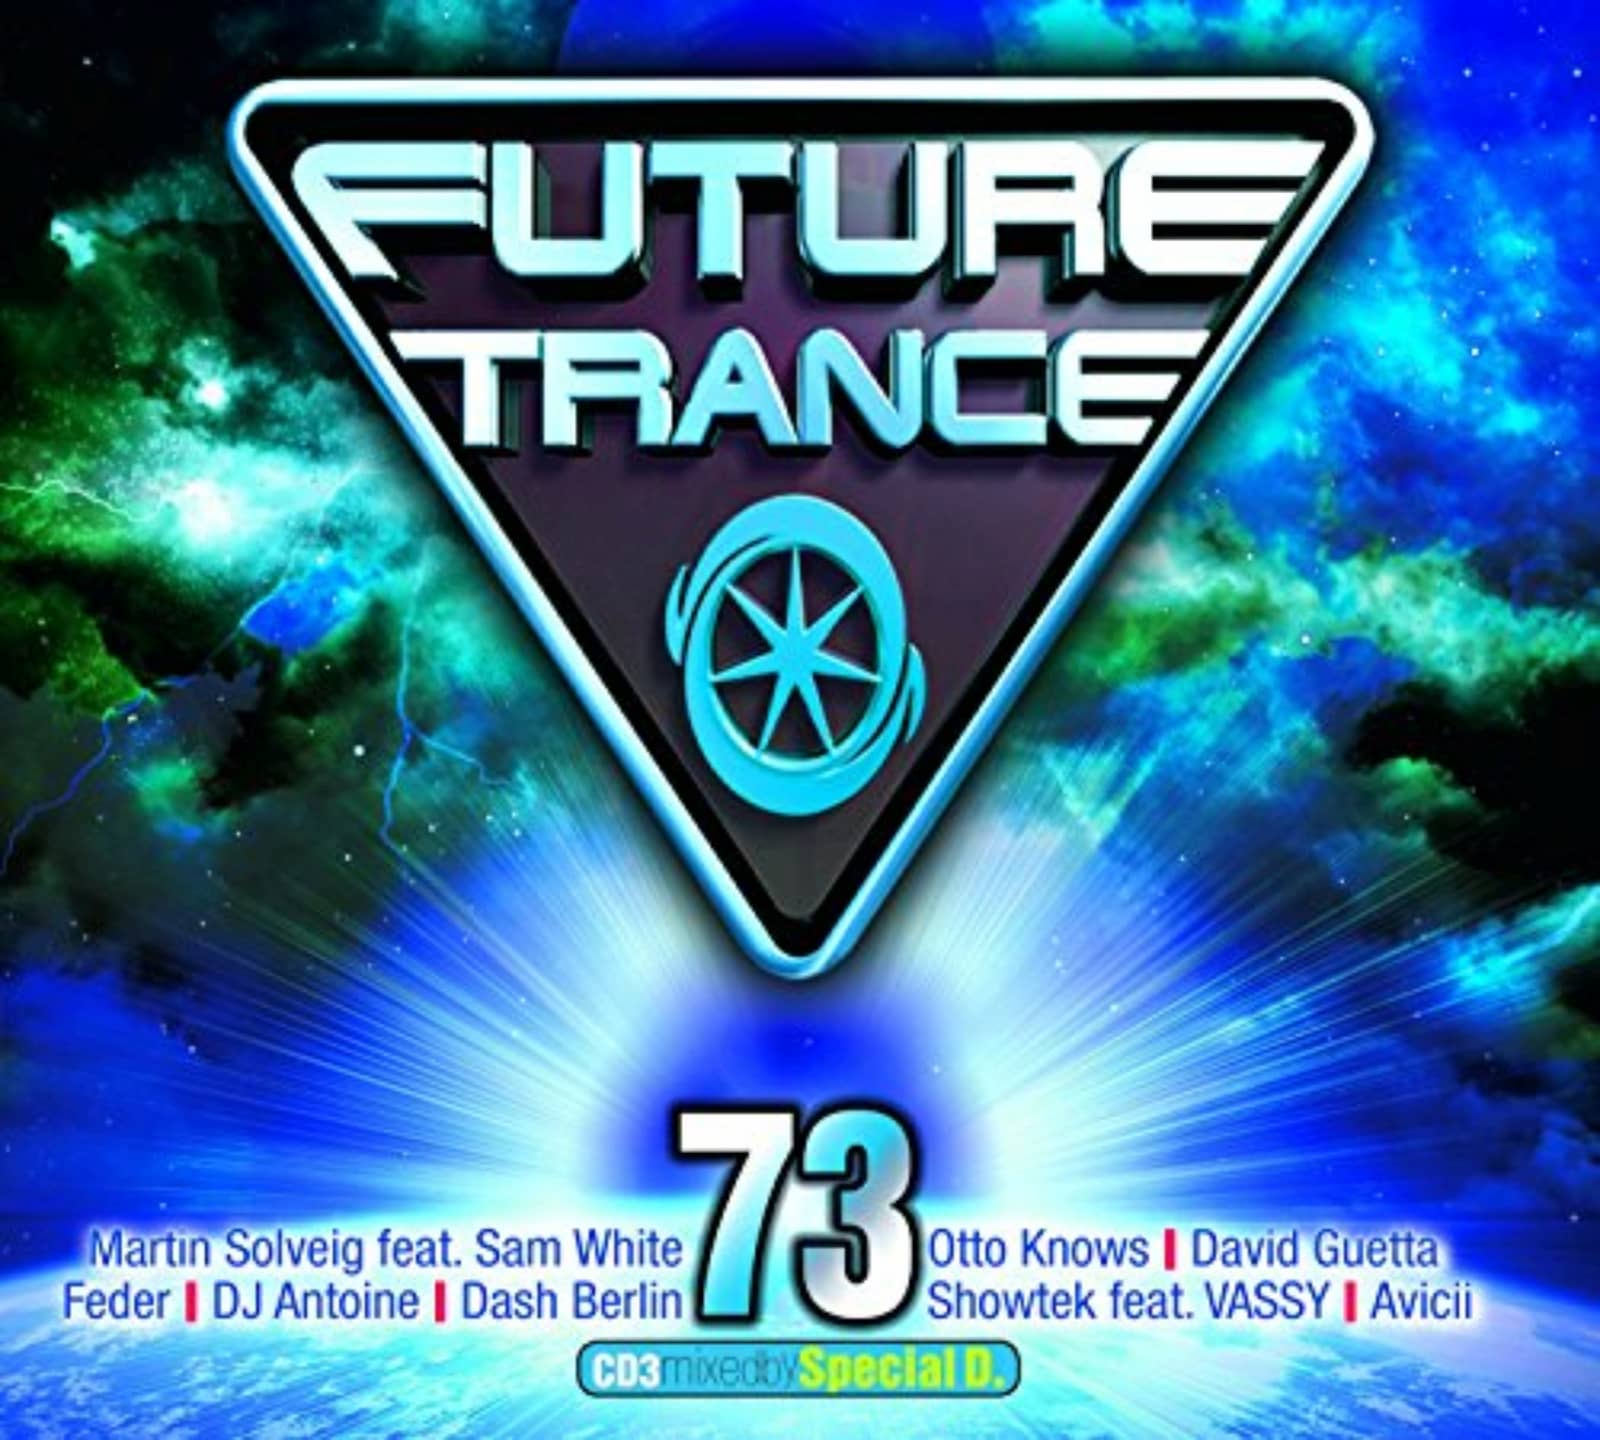 Trance 3. Future Trance Vol. 95. Vol 8 обложки Future Trance. Future Trance 65. Vol 61 обложки Future Trance.